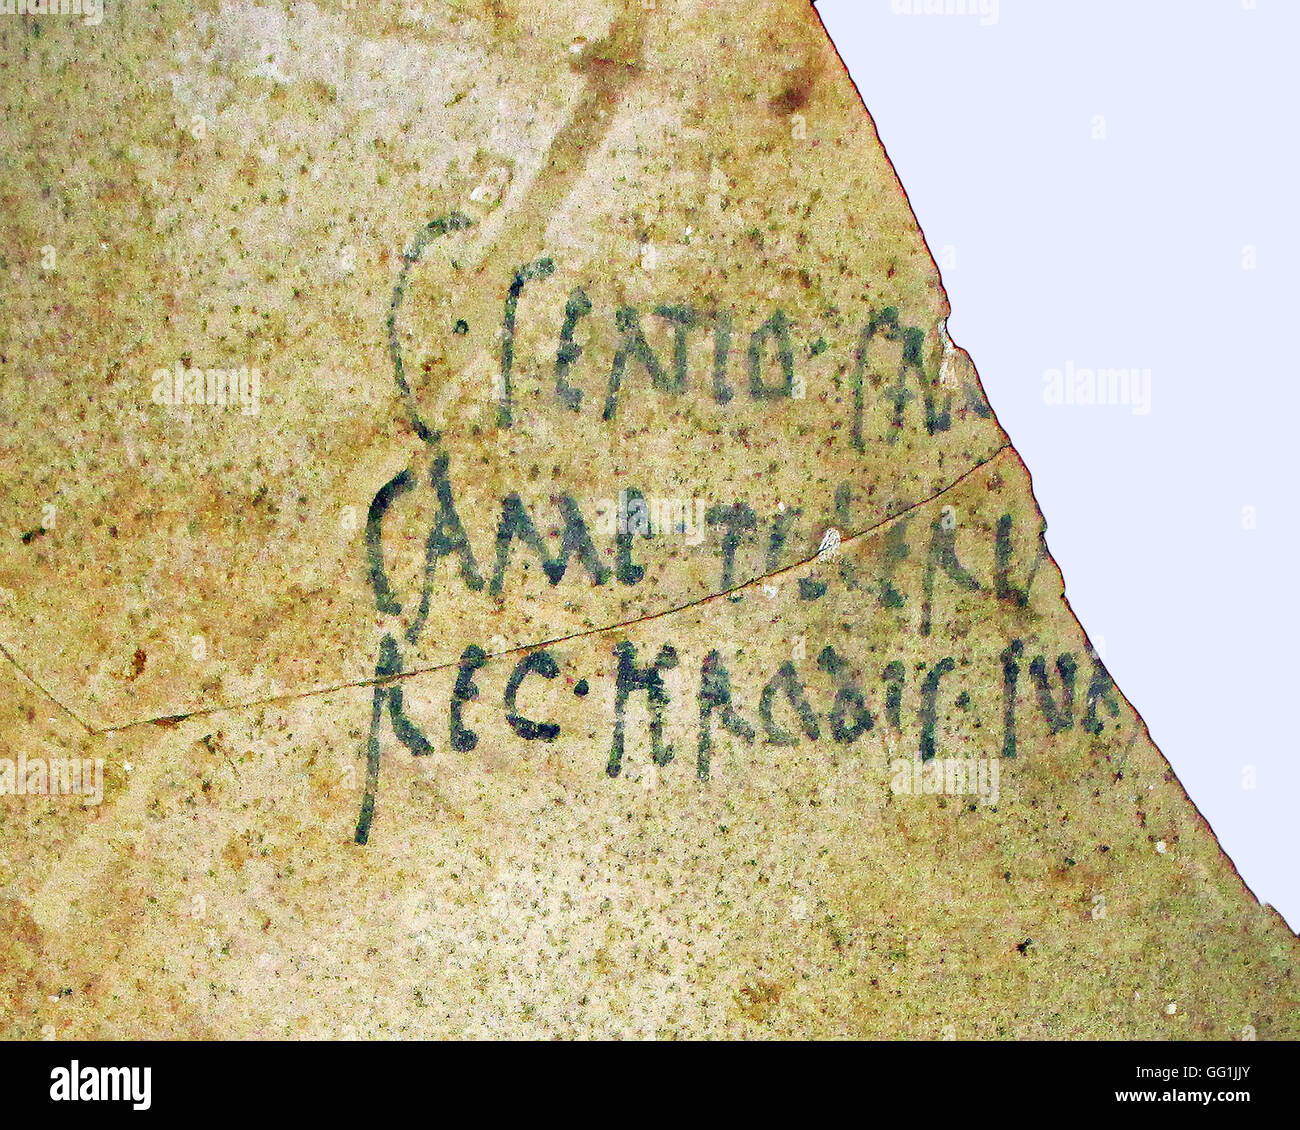 5875. Iscrizione in latino su una brocca di vino (anfora) che indica che il vino è stato acquistato dal re Erode, sherds trovati in Herodium e Foto Stock